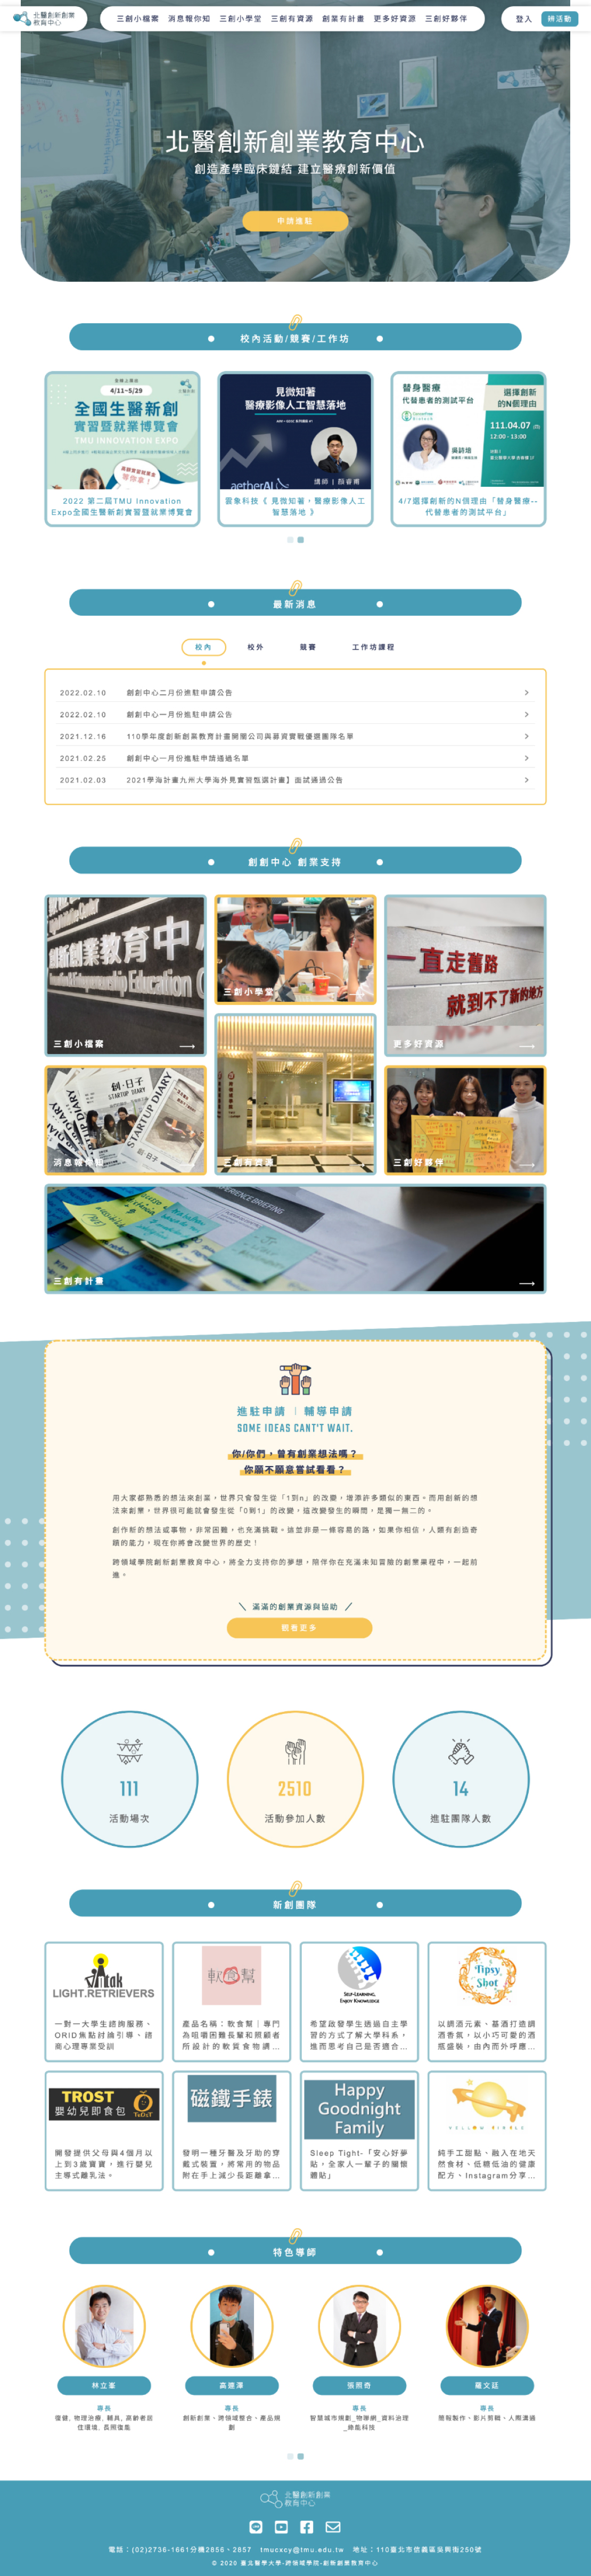 臺北醫學大學創新創業教育中心平台首頁展示